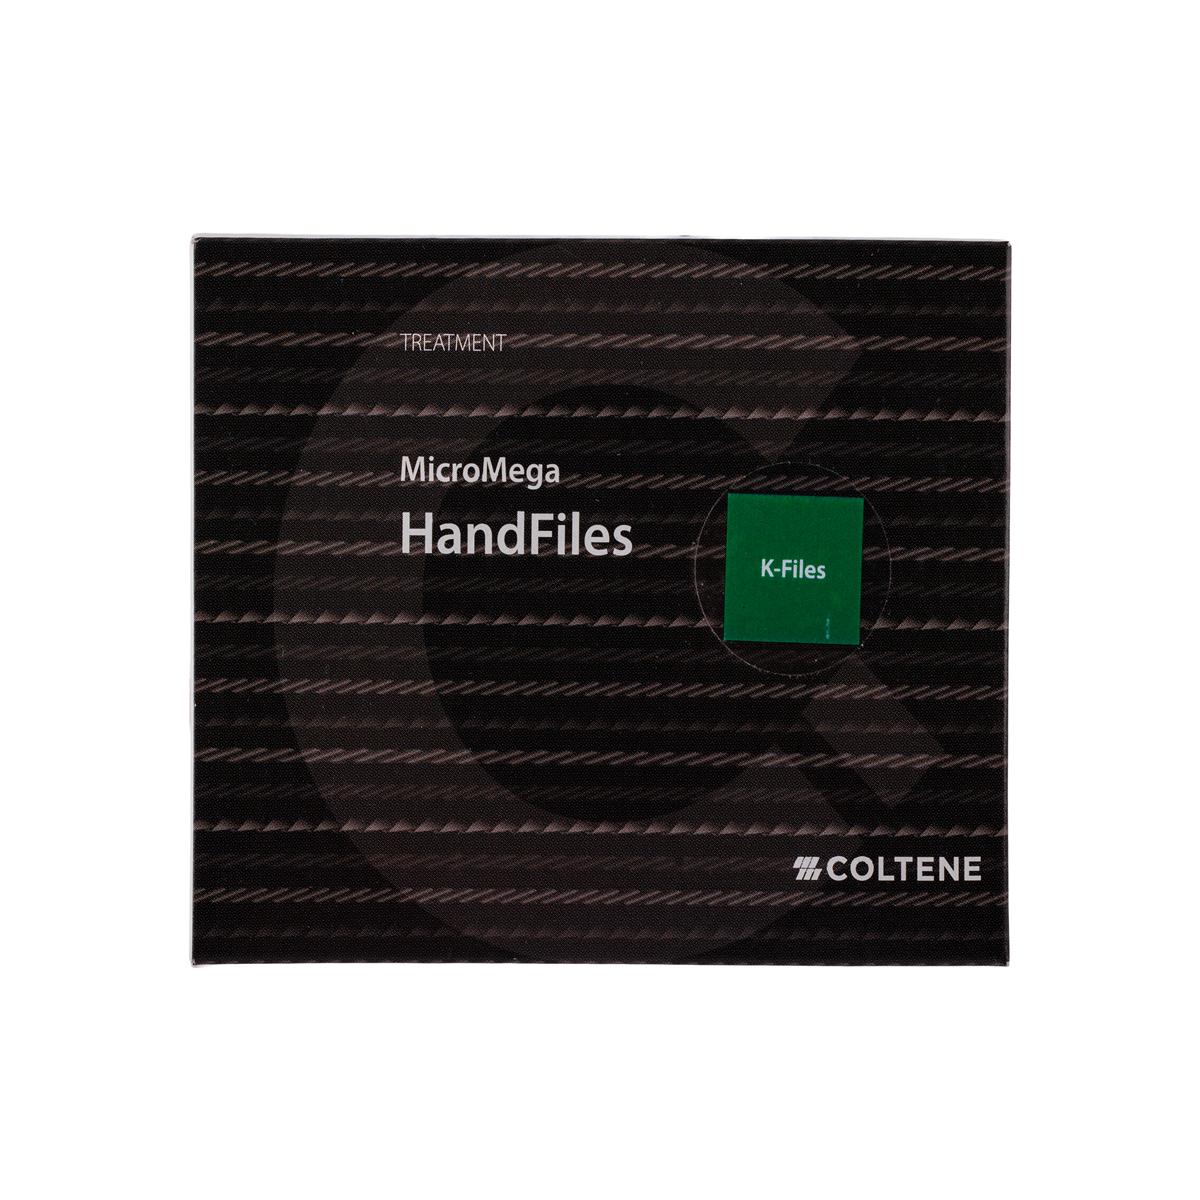 MicroMega B6 K-Files N070 31mm 6pk